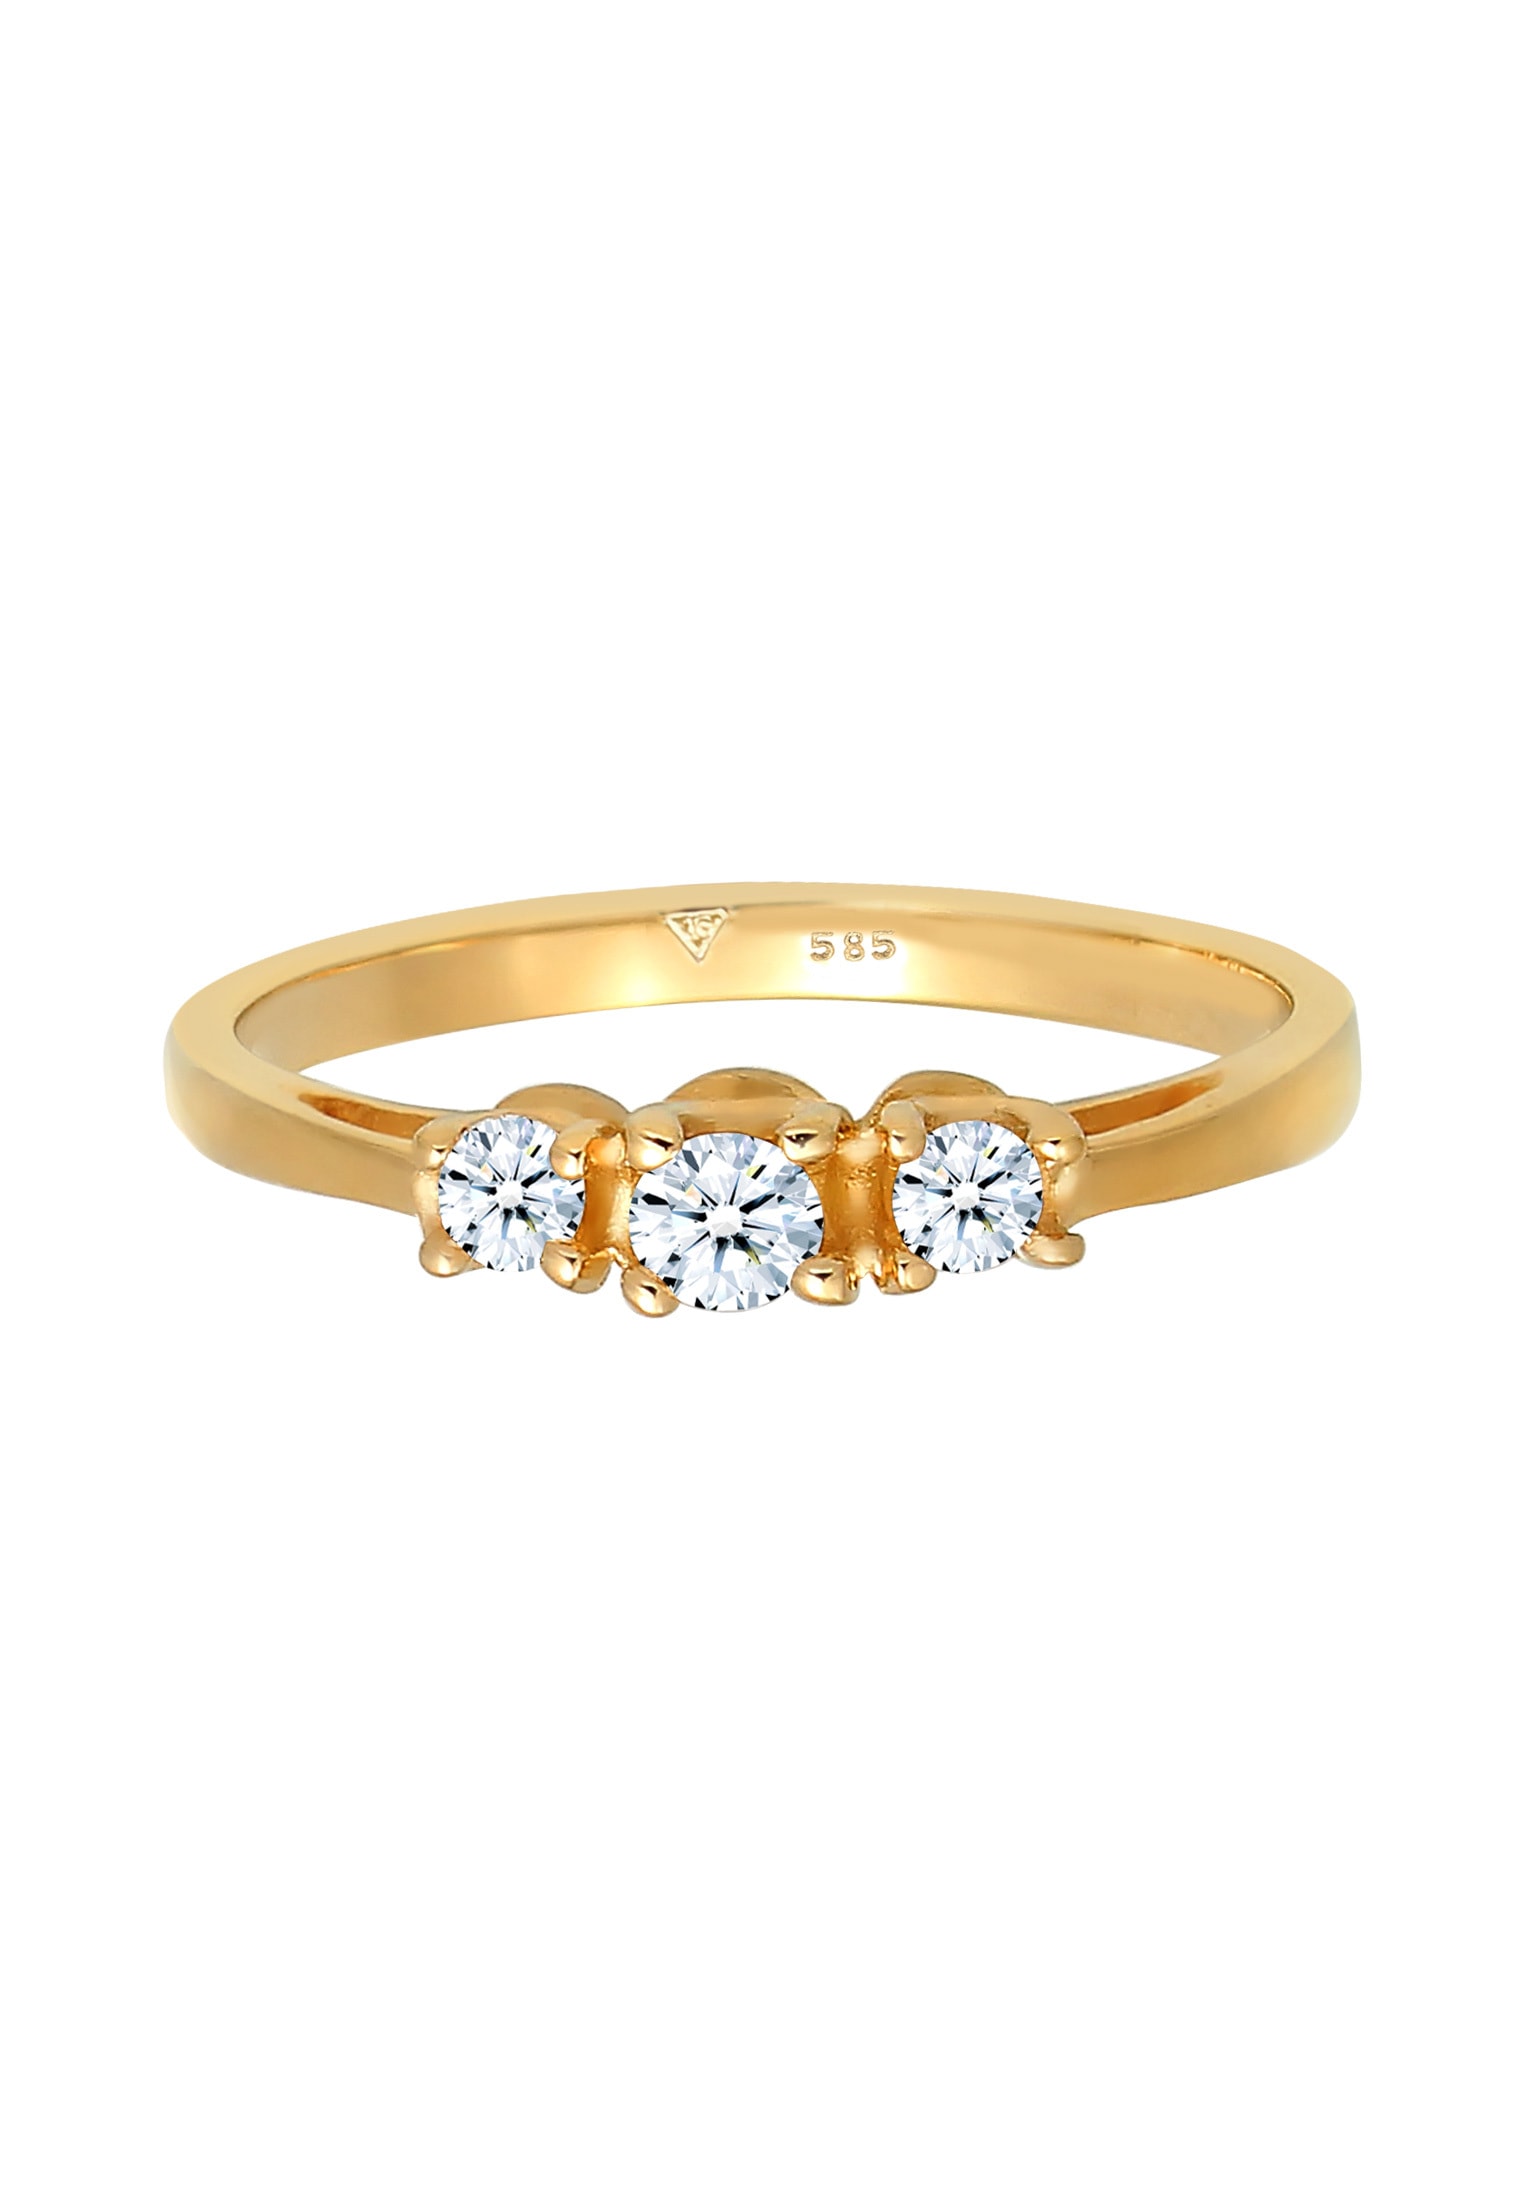 Elli DIAMONDS Verlobungsring »Verlobungsring Trio Diamant 0.23 ct. 585 Gelbgold«